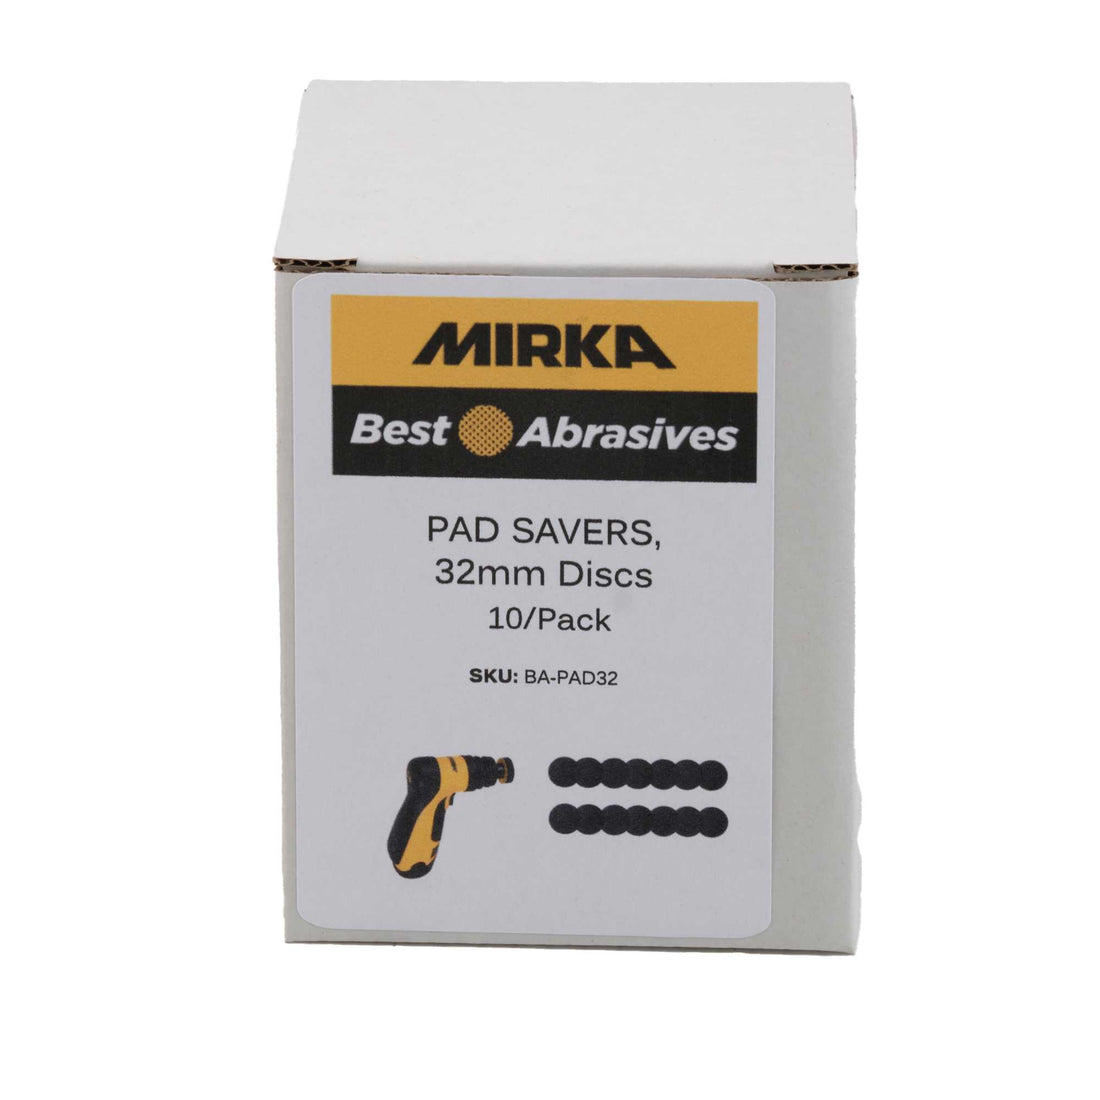 Mirka Pad Savers, 32mm Discs, 10/Pack Mirka